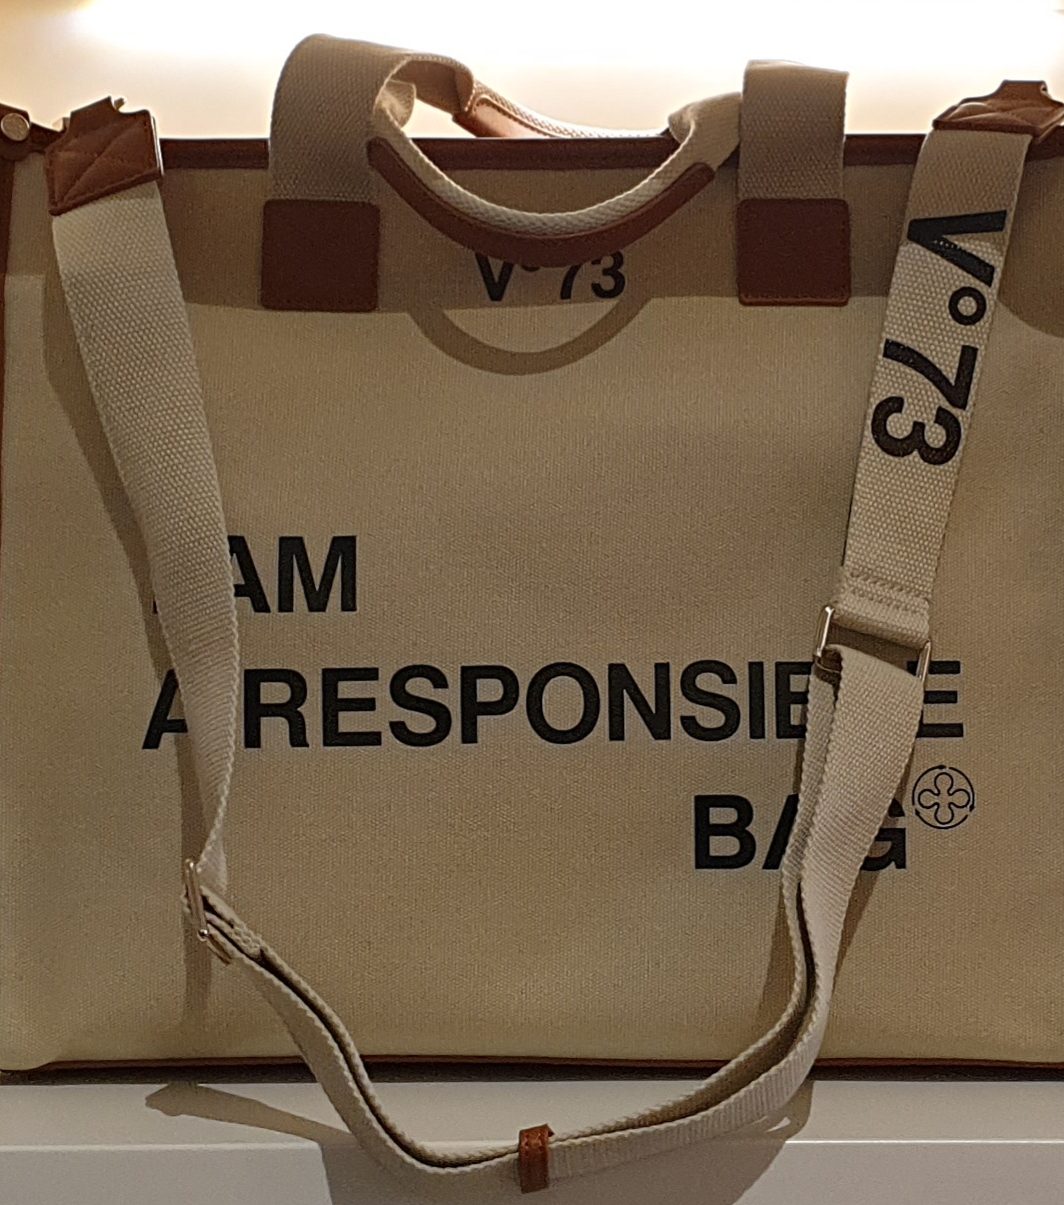 V73 shopper Responsible bag